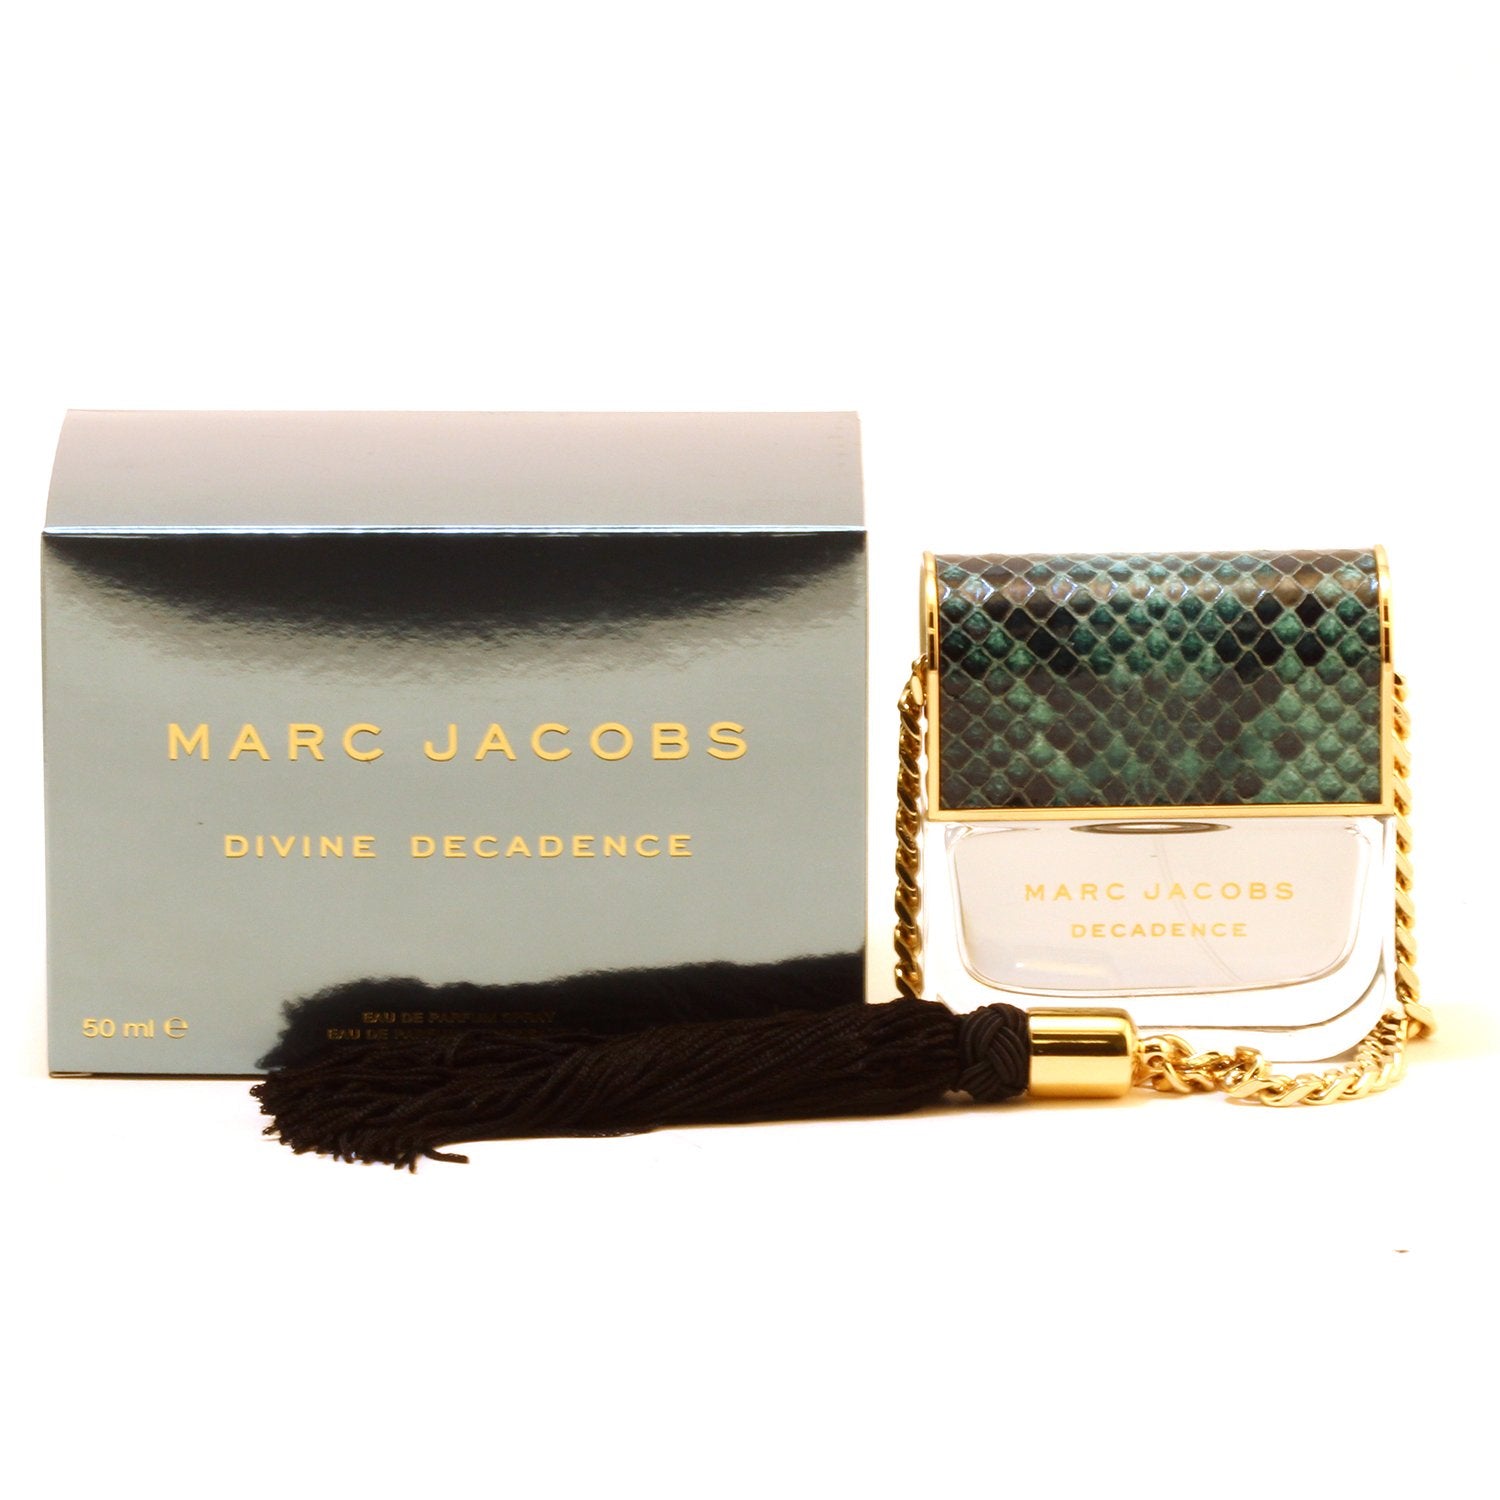 Perfume - MARC JACOBS DIVINE DECADENCE FOR WOMEN - EAU DE PARFUM SPRAY, 1.7 OZ